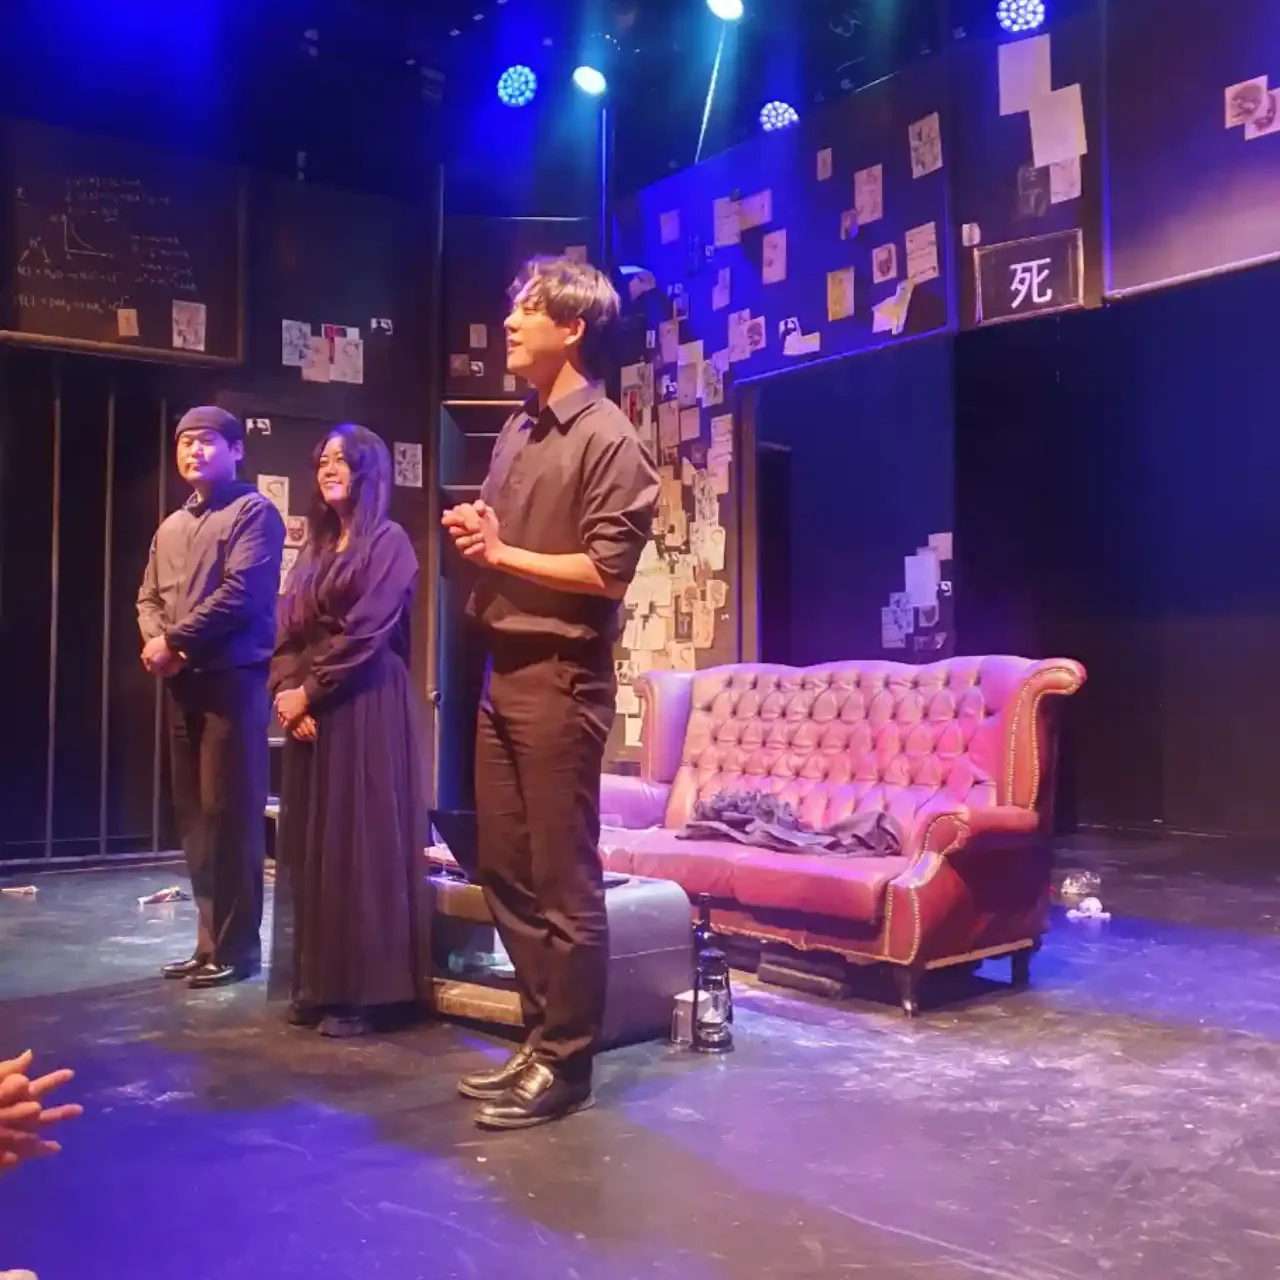 혜화역 인근 극장에서 본 연극 죽여주는 이야기의 검은옷을 입은 3명의 등장인물